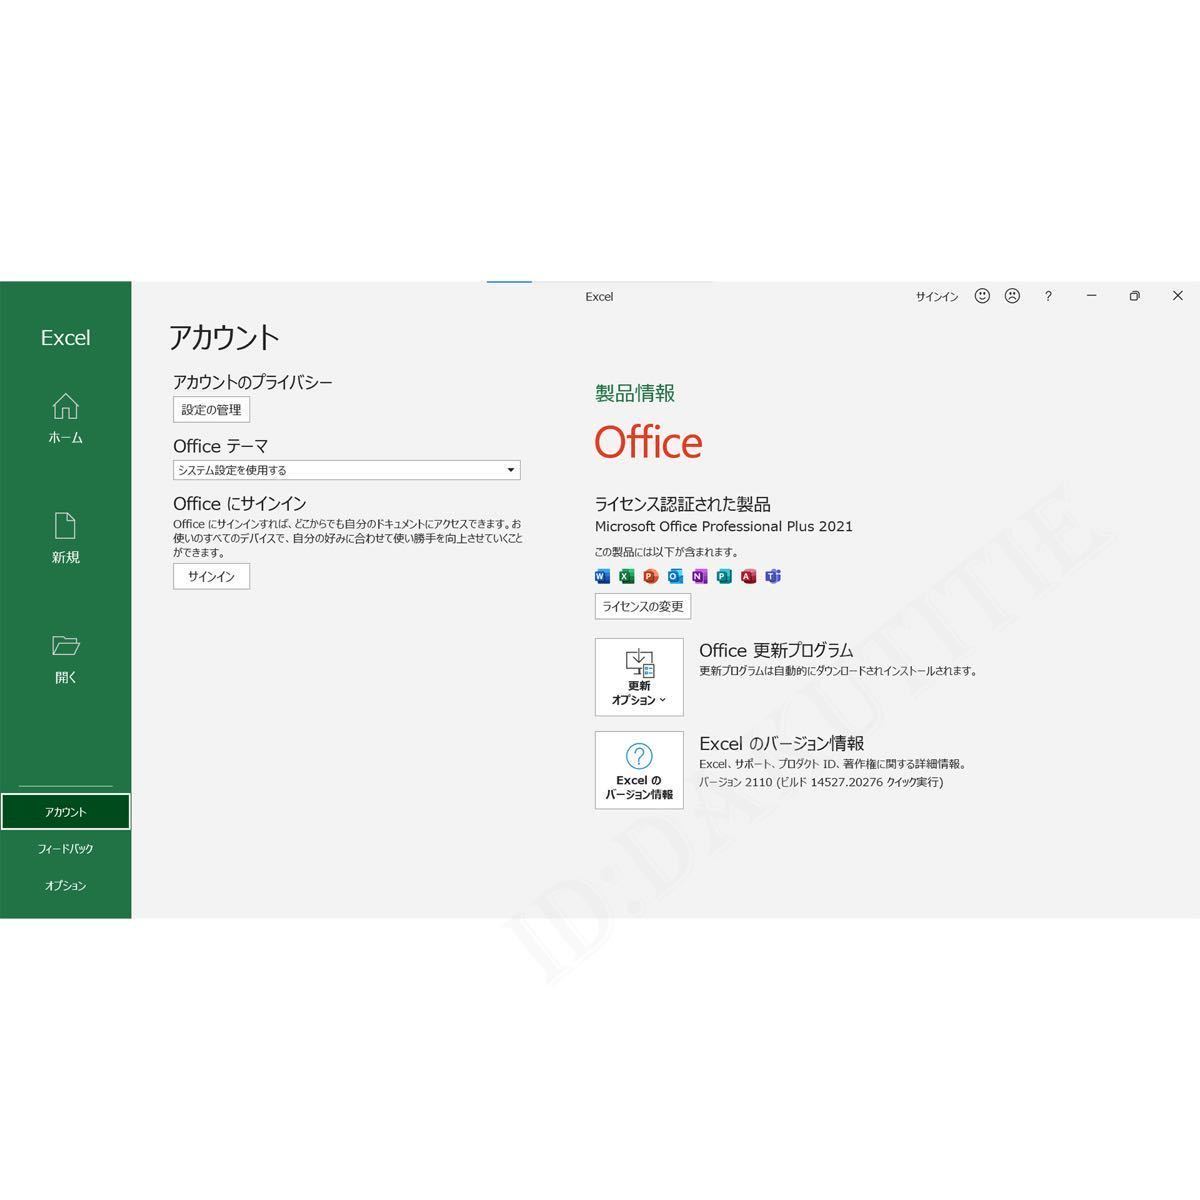 【5台分】Microsoft Office 2021 Professional Plus 永年正規保証プロダクトキー 32/64bit対応 Access Word Excel PowerPoint 日本語4